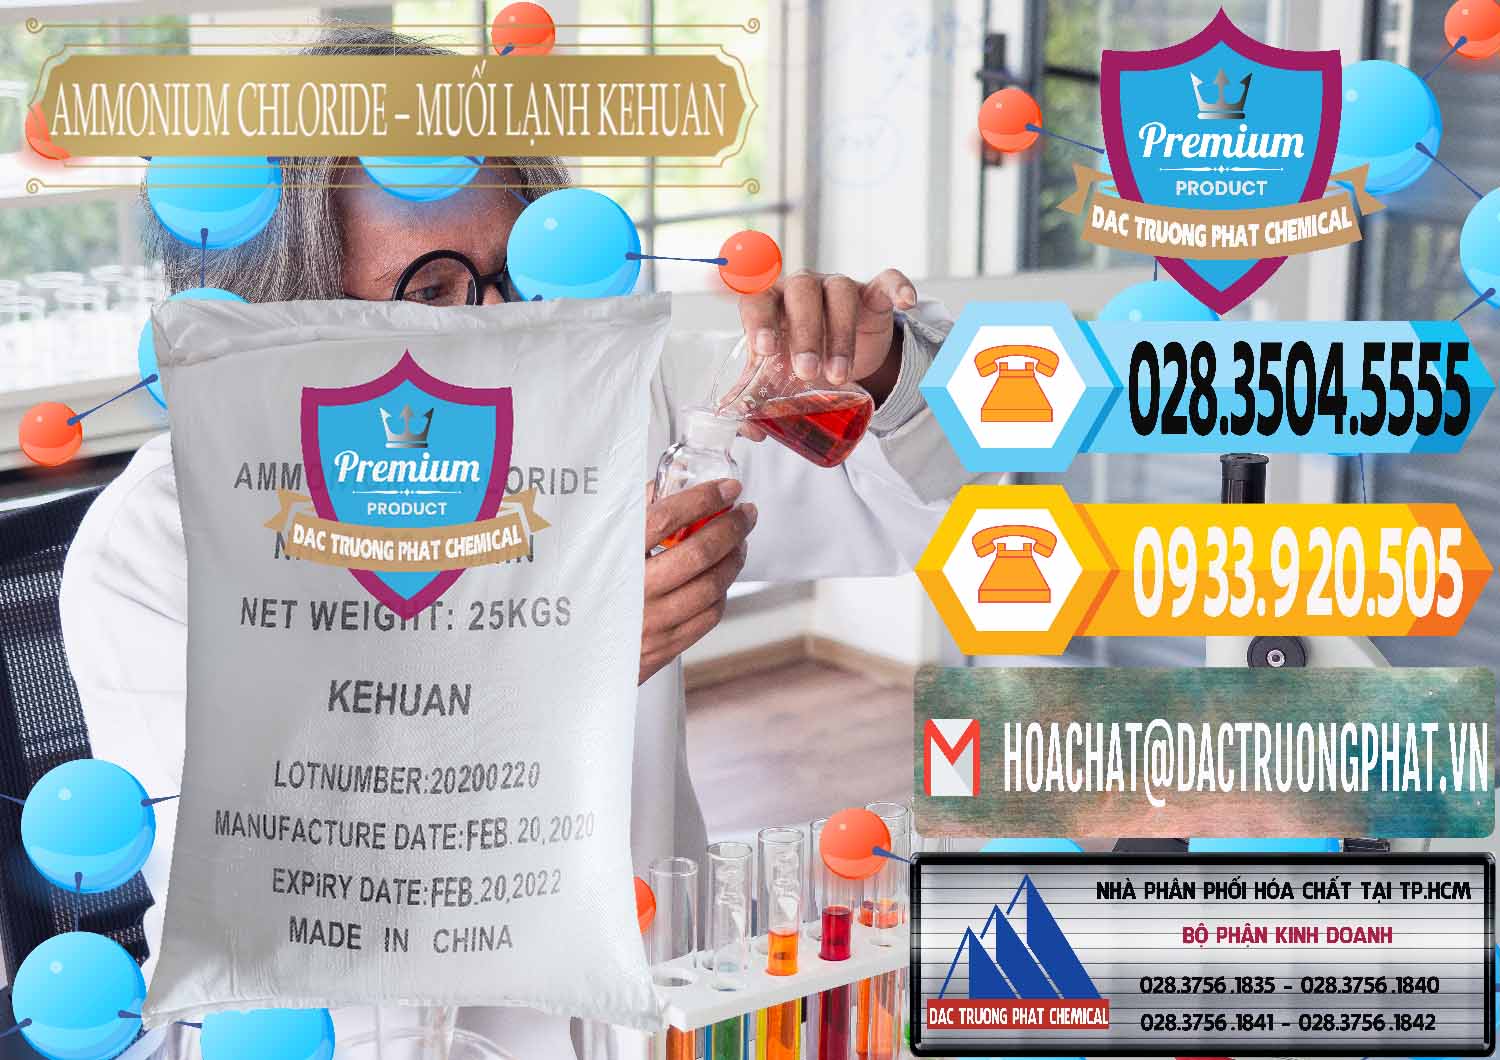 Cty chuyên phân phối ( bán ) Ammonium Chloride – NH4CL Muối Lạnh Kehuan Trung Quốc China - 0022 - Công ty chuyên cung cấp & bán hóa chất tại TP.HCM - hoachattayrua.net